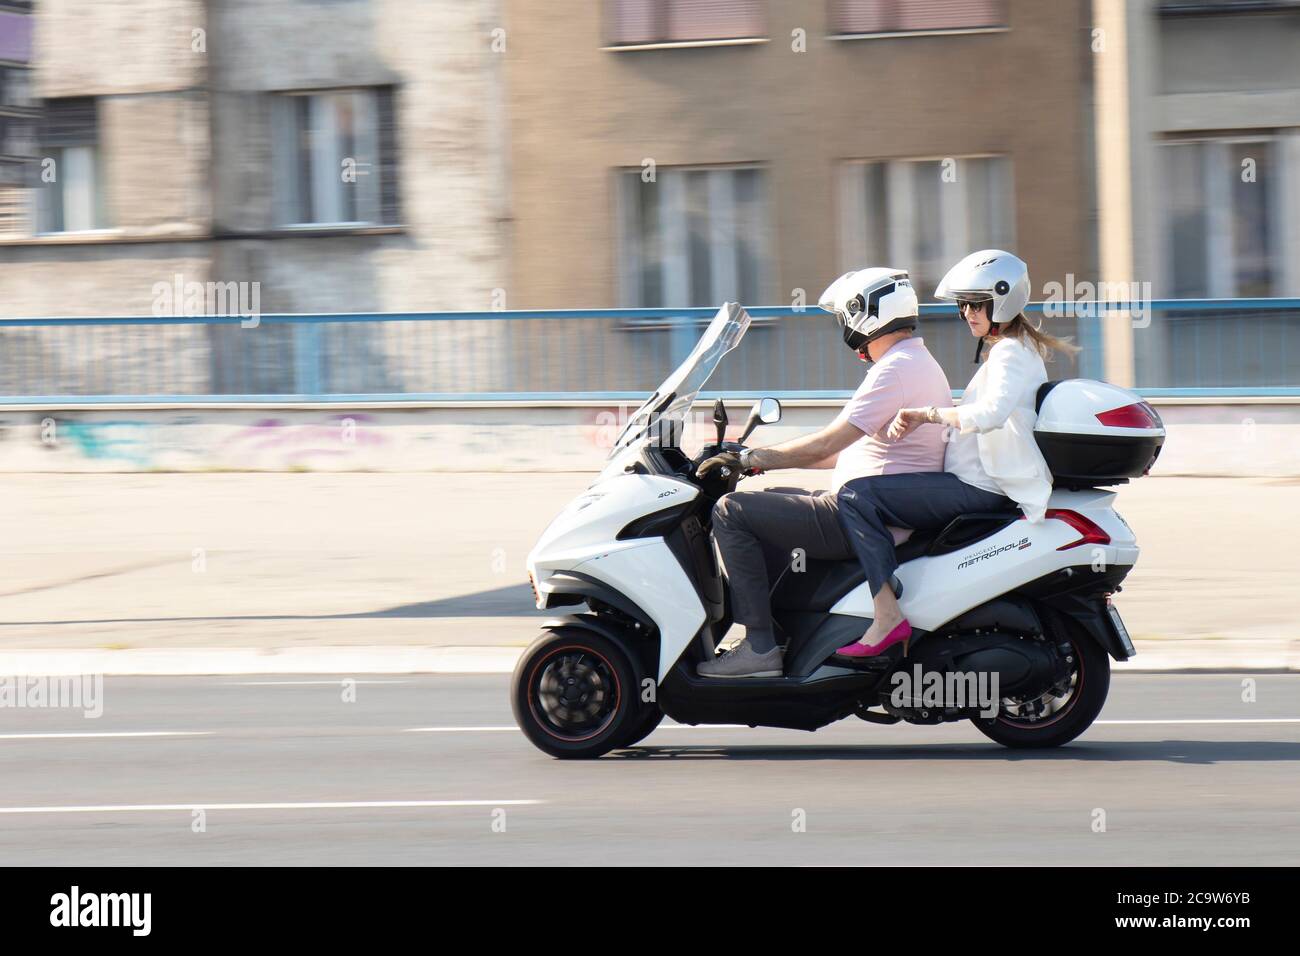 Belgrad, Serbien - 31. Juli 2020: Reifes Paar, das auf einem dreirädrigen Motorrad auf der Stadtstraße fährt, und eine Frau überprüft die Zeit an ihrer Armbanduhr Stockfoto